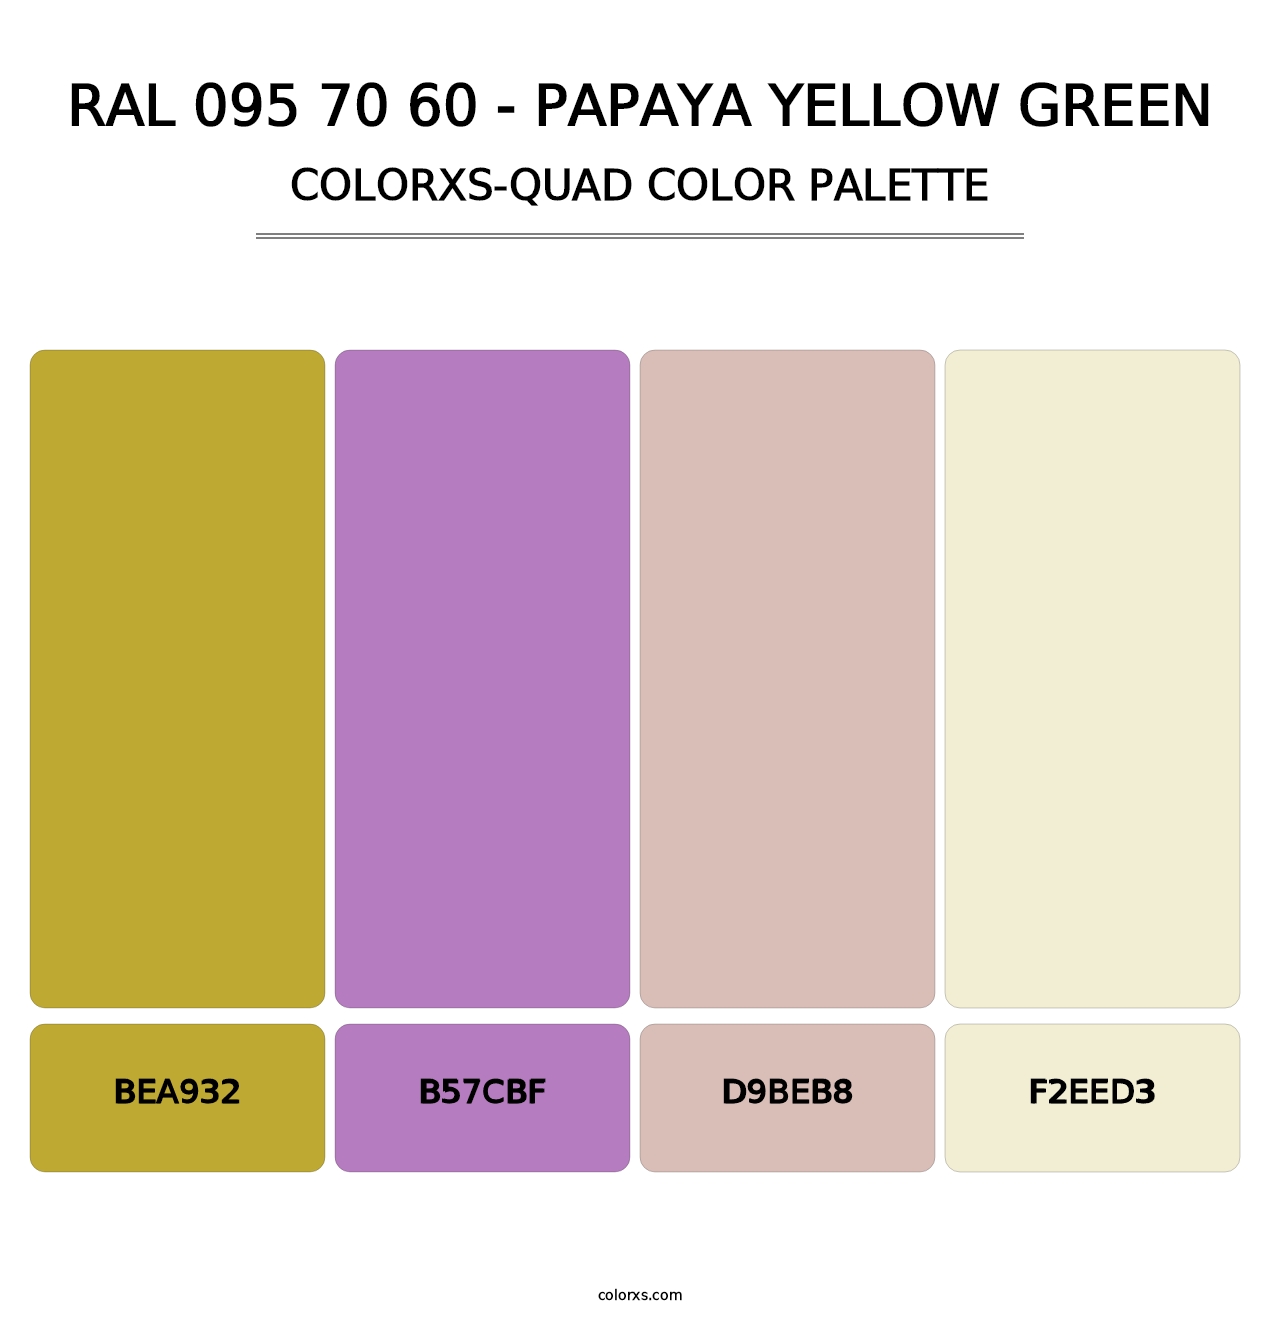 RAL 095 70 60 - Papaya Yellow Green - Colorxs Quad Palette